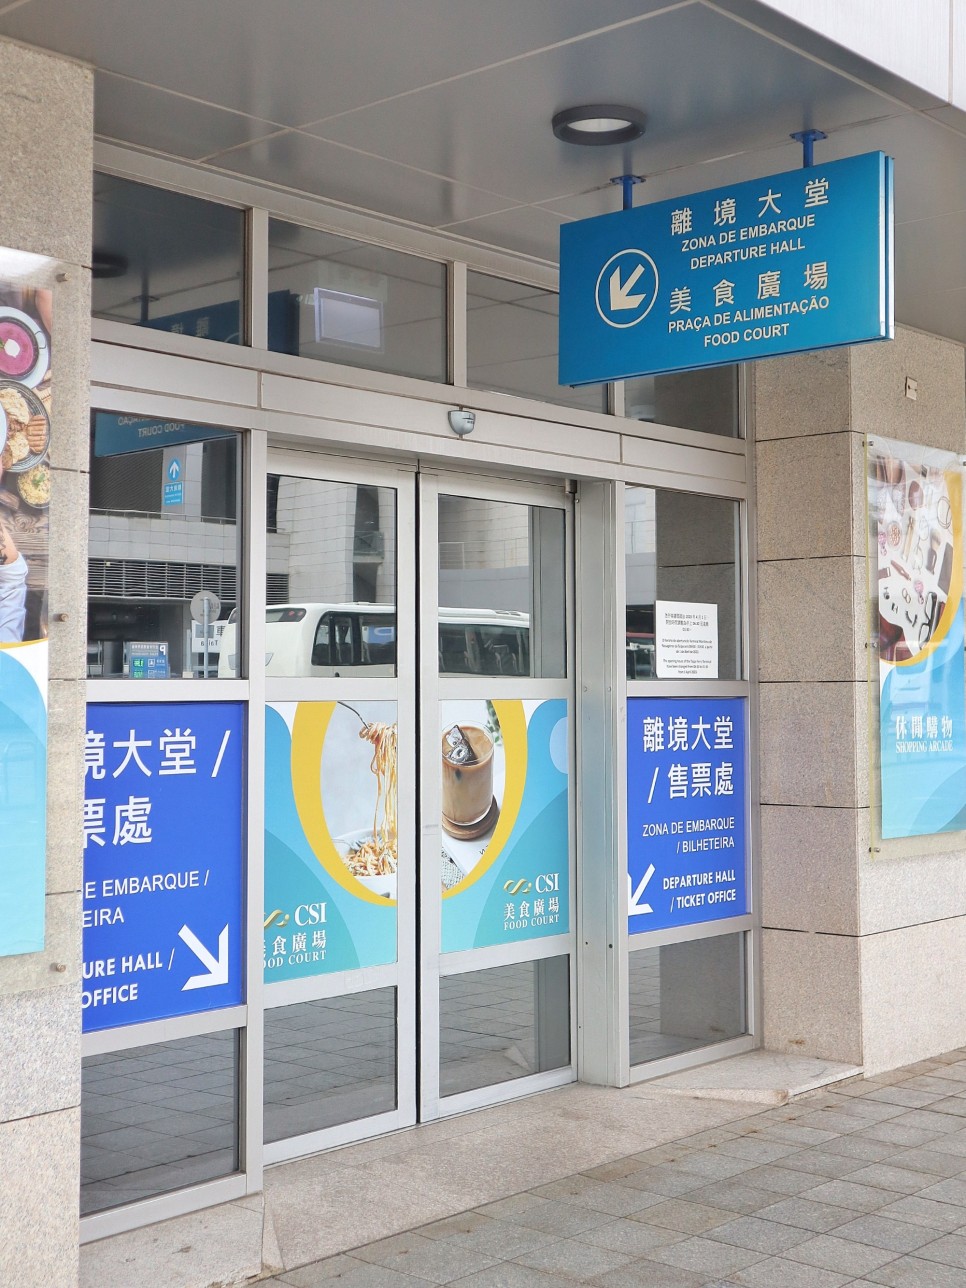 홍콩 마카오 페리 이동 가격 터미널 예약 방법 가는법 여행 꿀팁